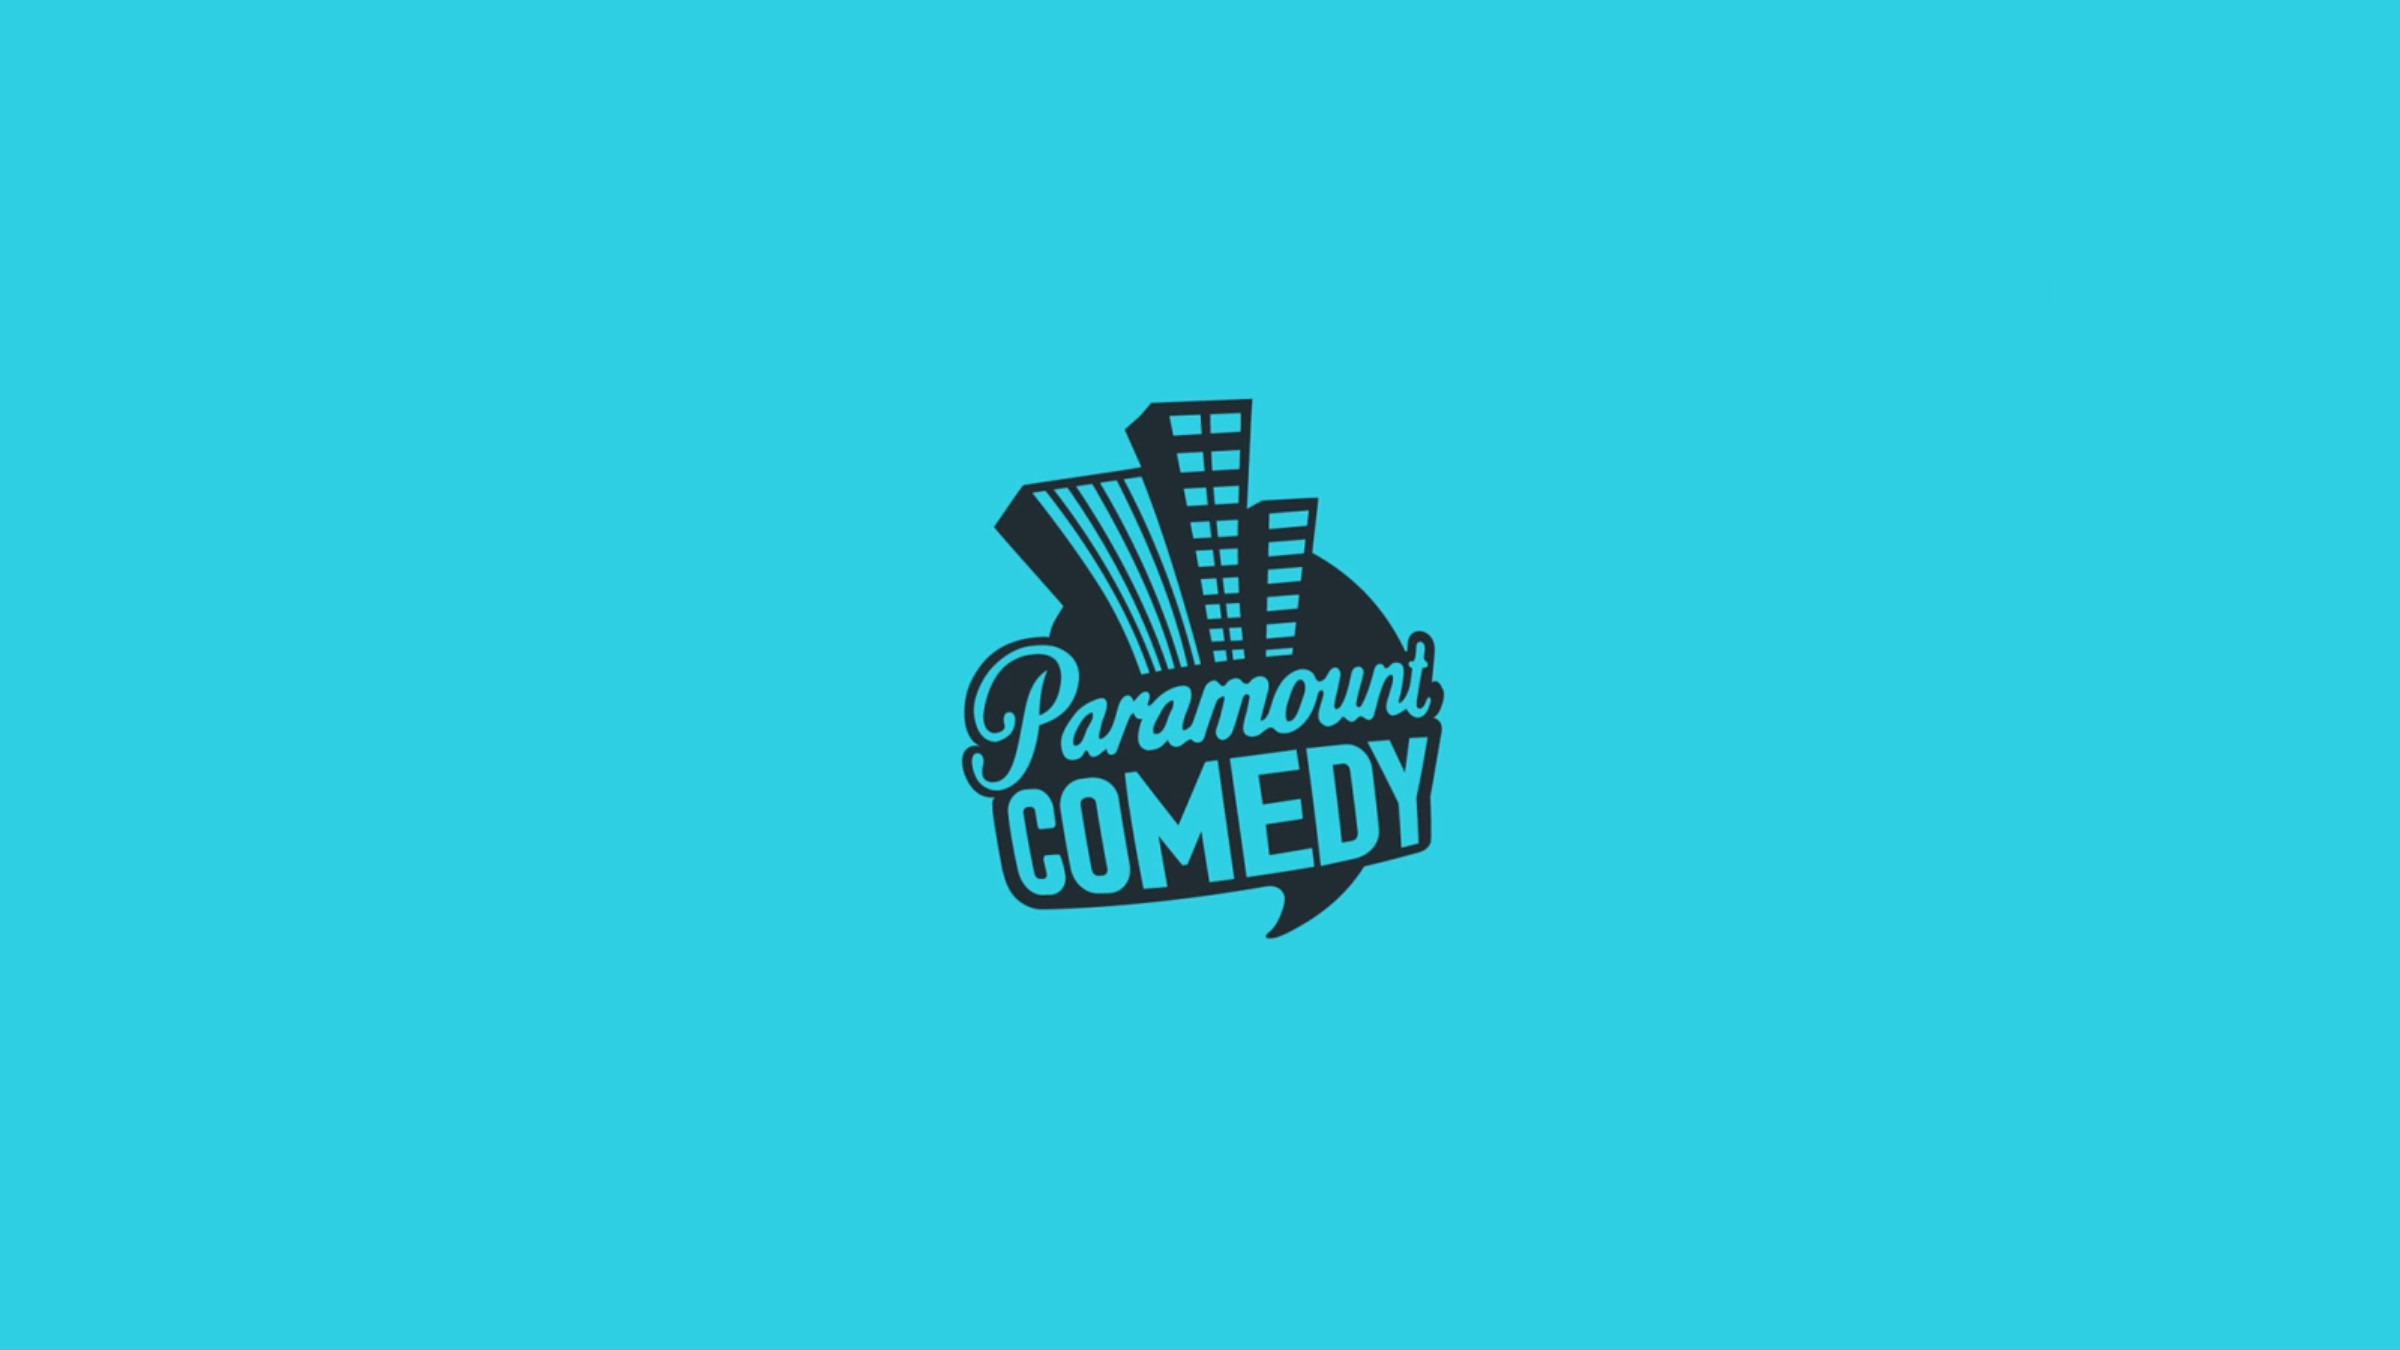 Премьера стендап-шоу на Paramount Comedy состоится 11 декабря